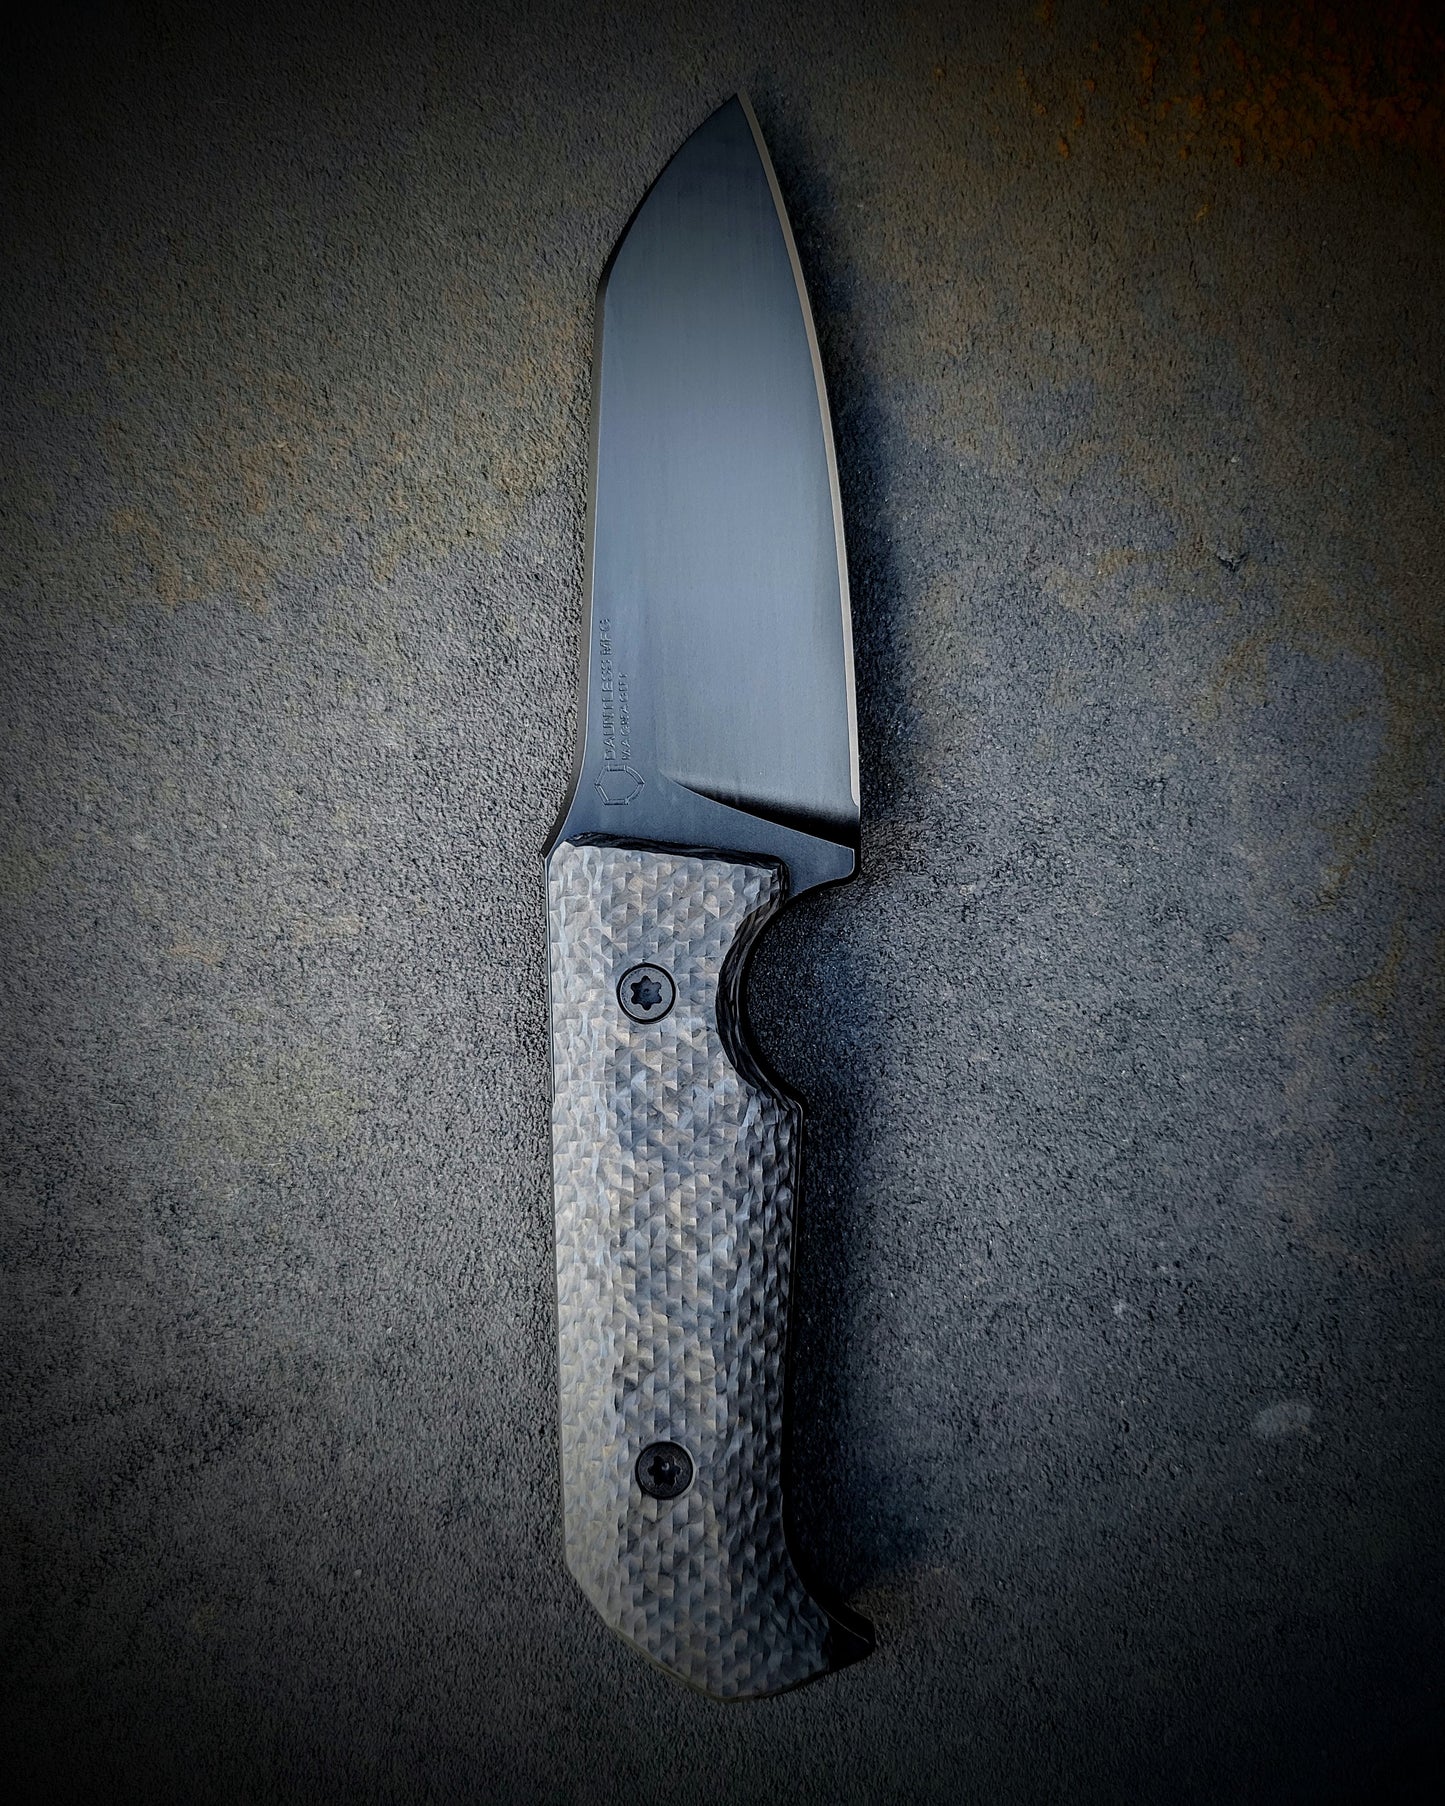 Matt Helm Work Knife V1